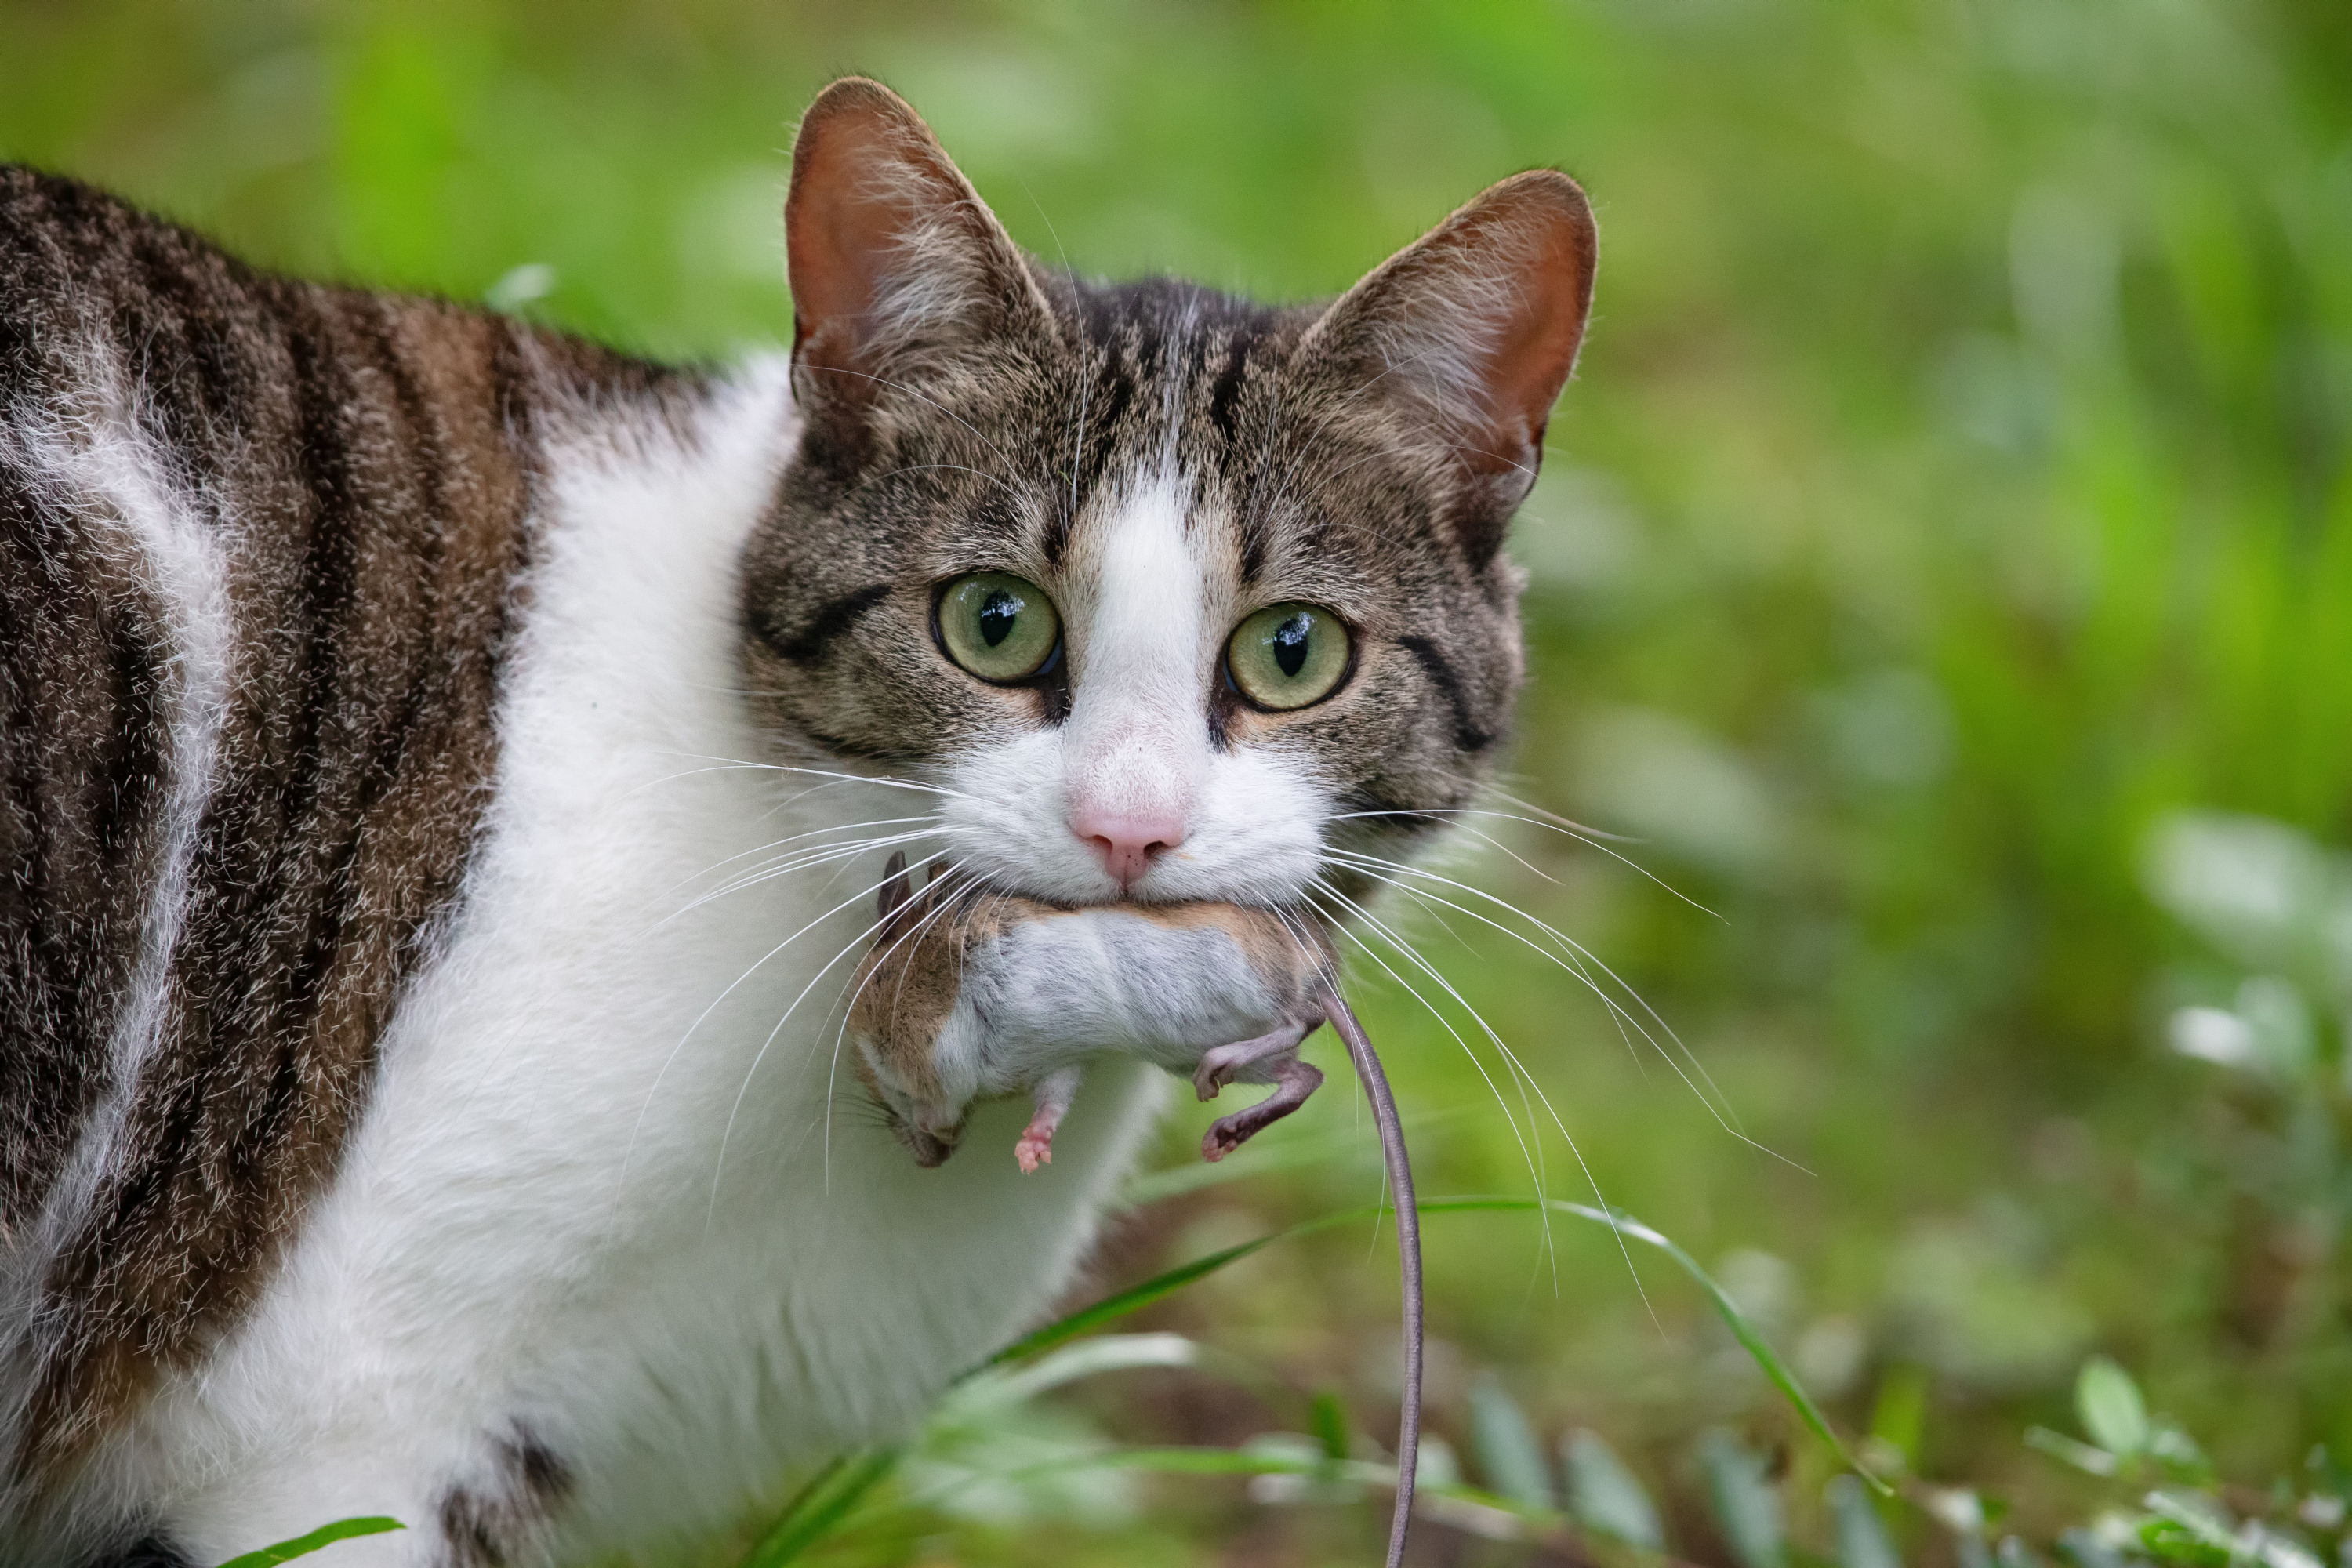 Les mythes de la nourriture en canne pour chat - Centre de Nutrition Animale